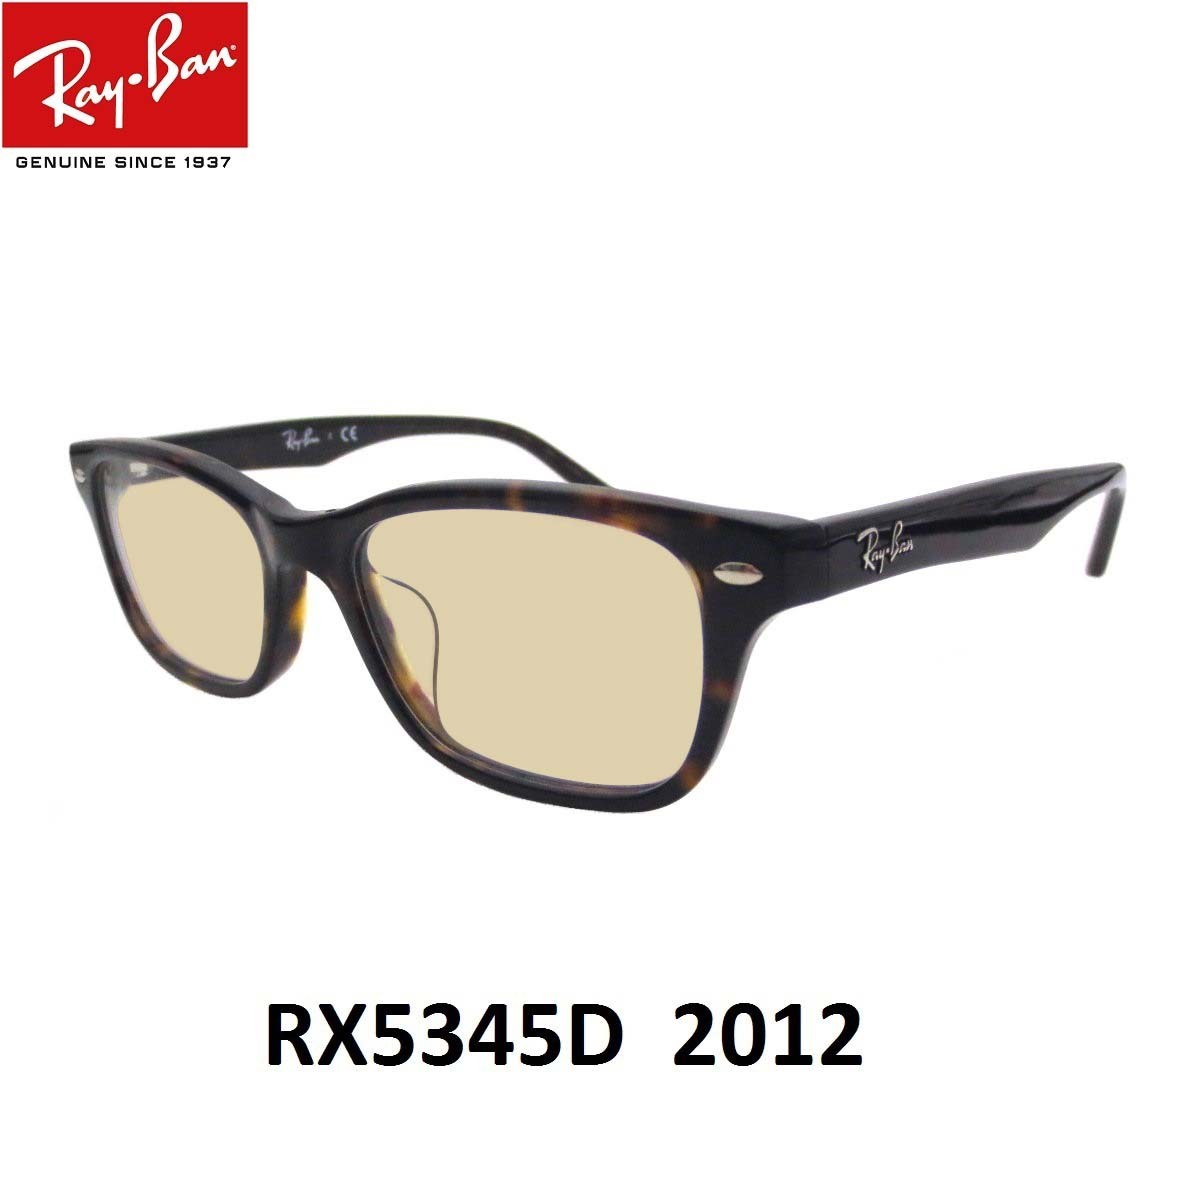 レイバン ライトカラー サングラス Ray-Ban RX5345D-2012 サイズ53ミリ アジア...